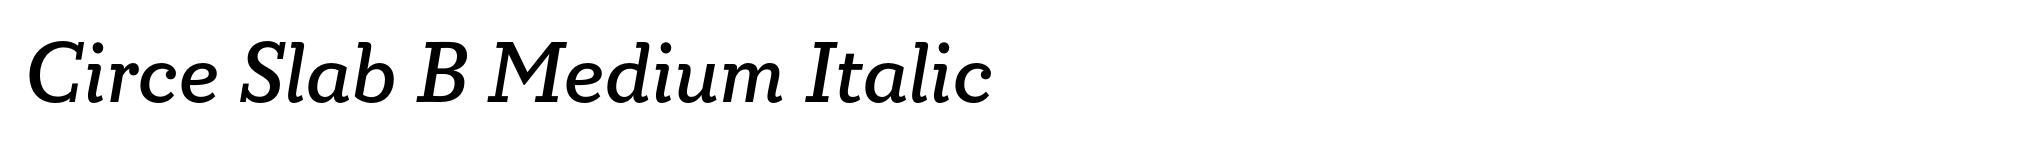 Circe Slab B Medium Italic image